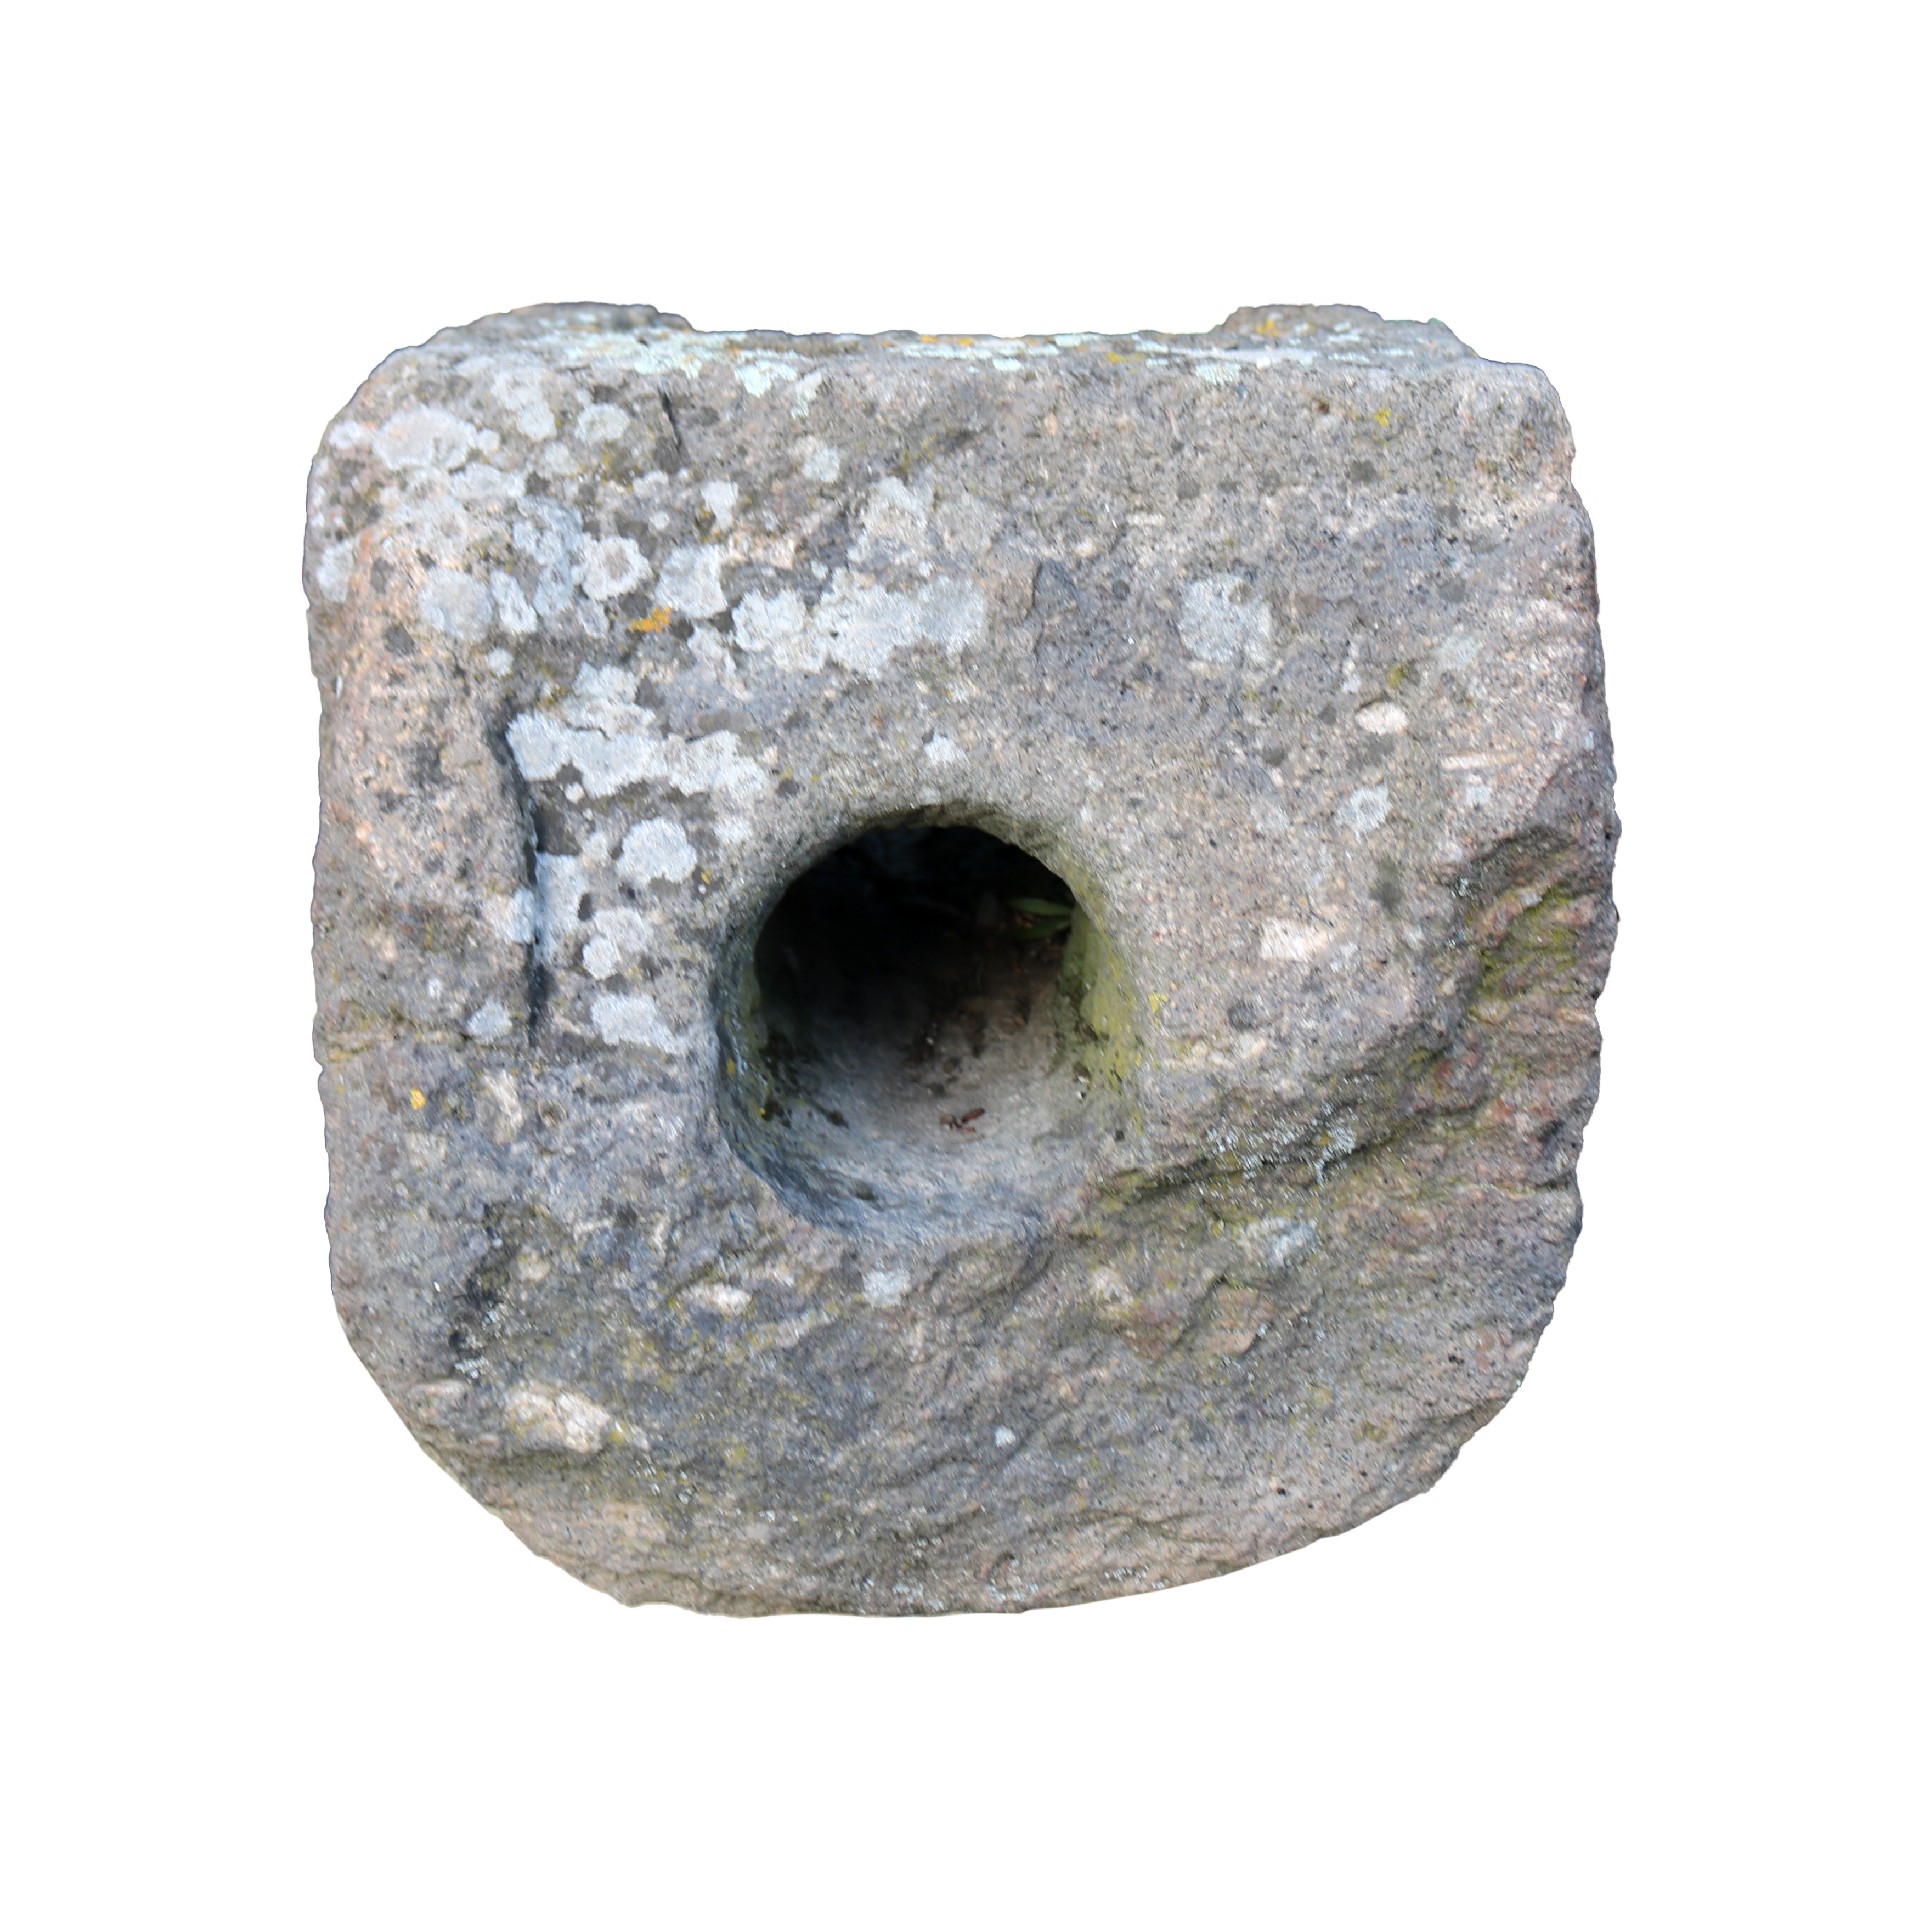 Antica vasca butt'acqua in pietra. - Mascheroni Antichi - Arredo Giardino - Prodotti - Antichità Fiorillo